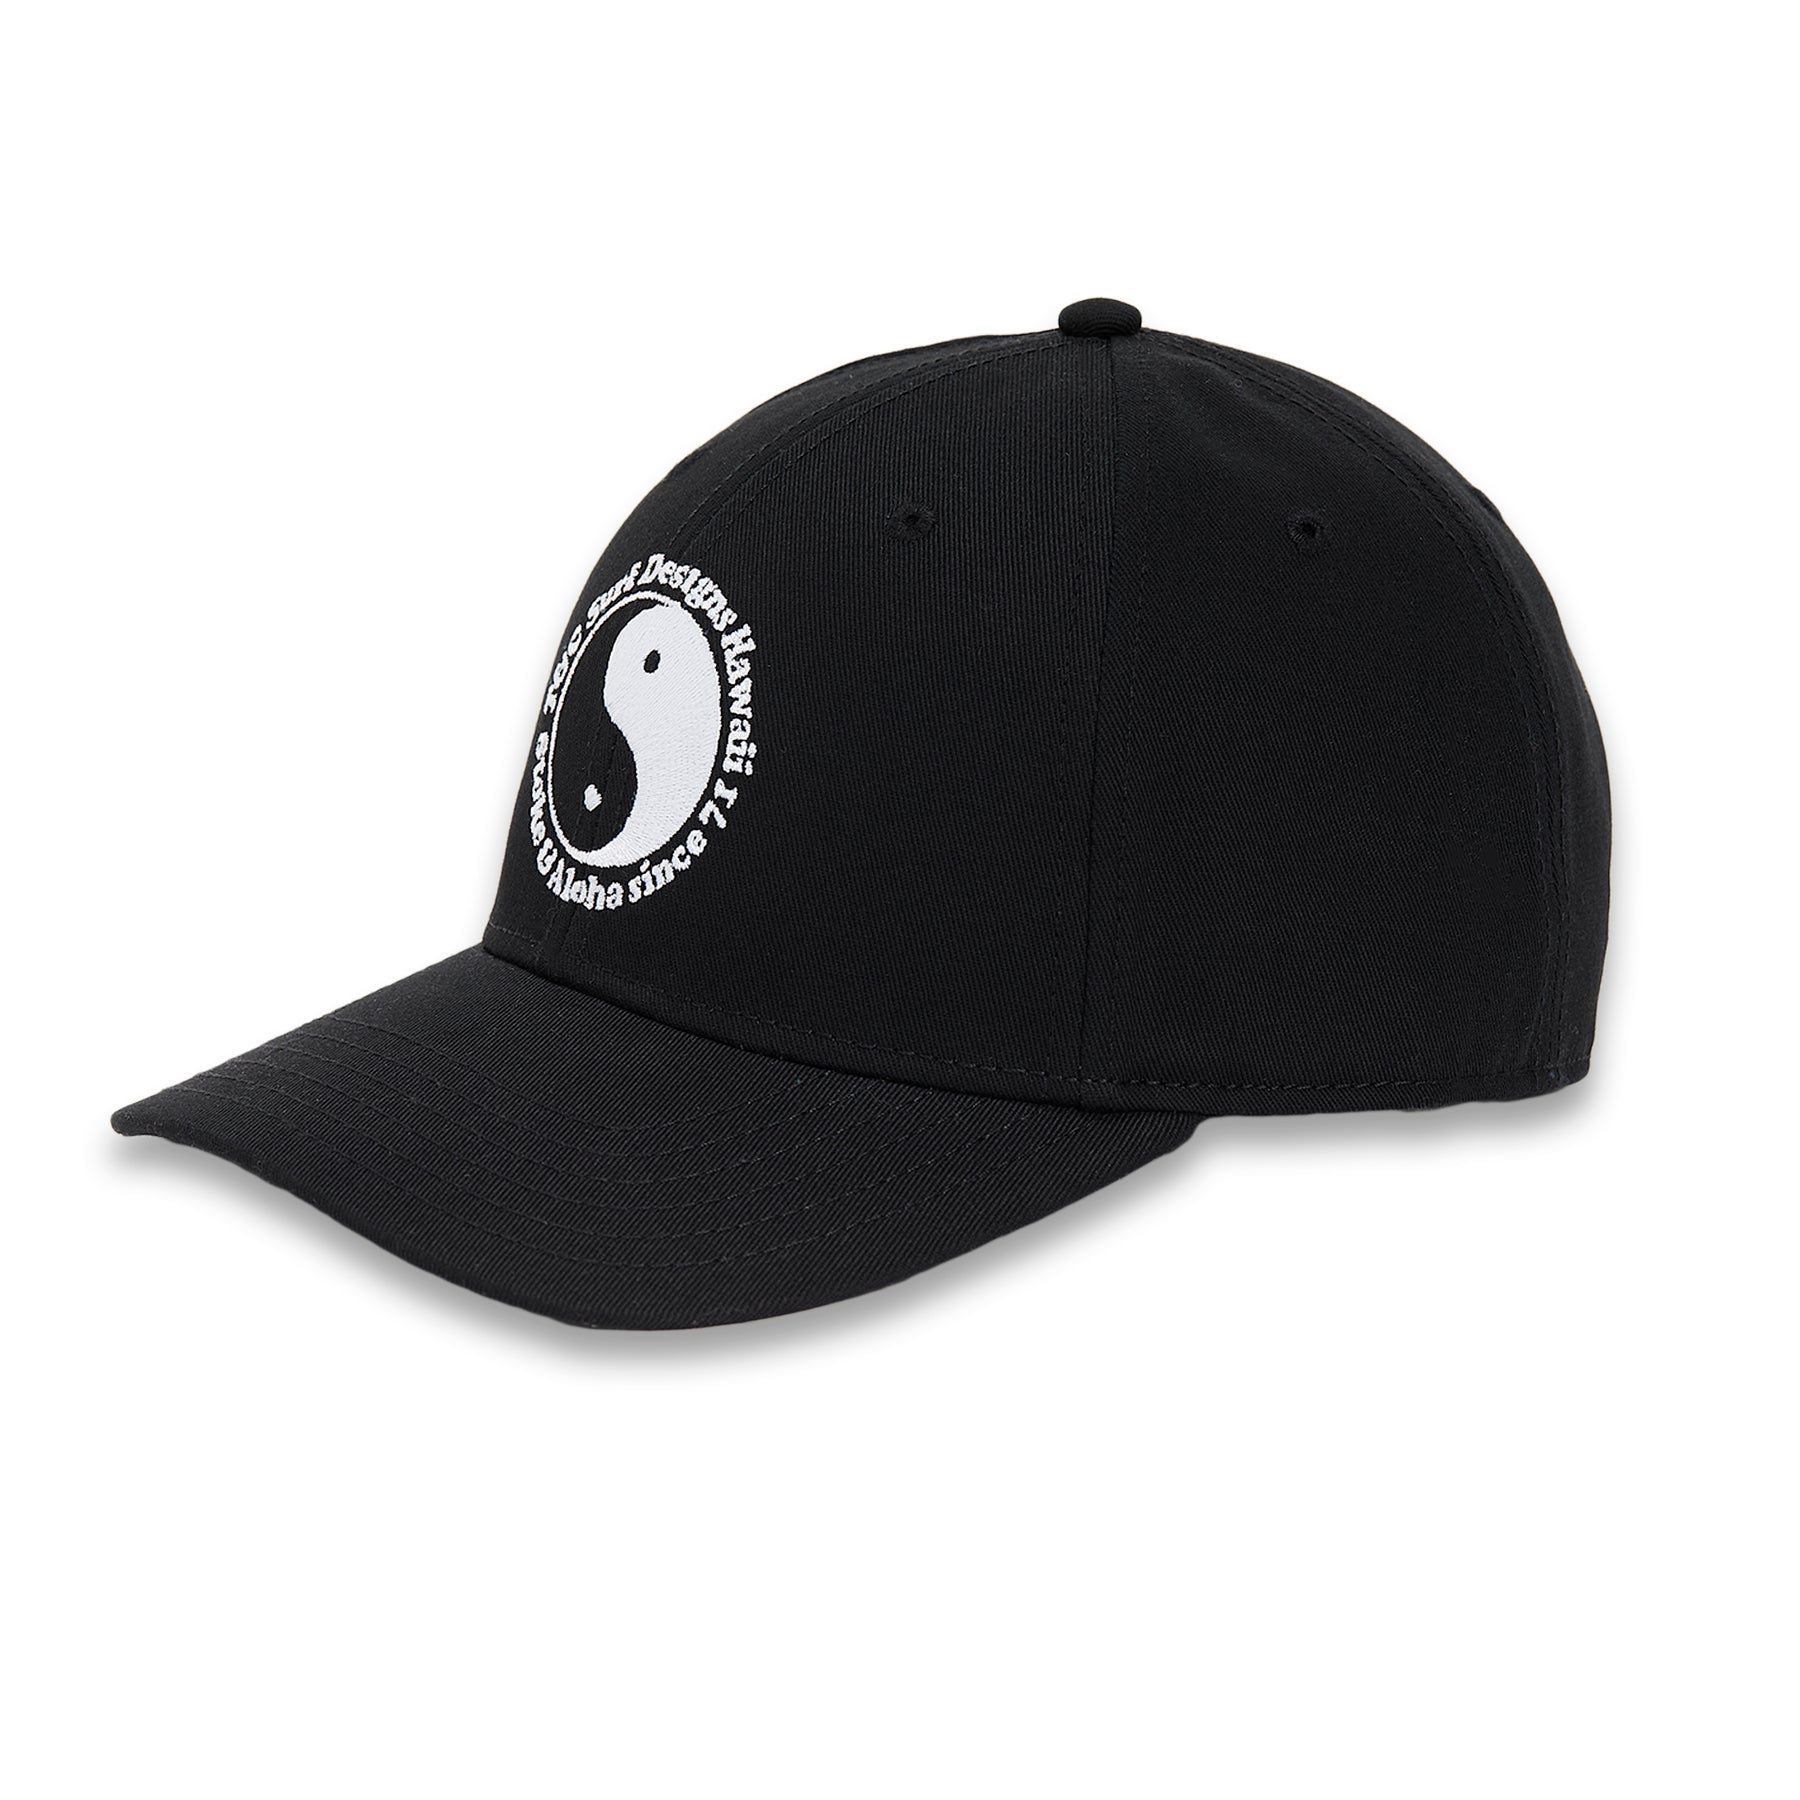 T&C Surf Designs OG SNAP BACK CAP - Washed Black